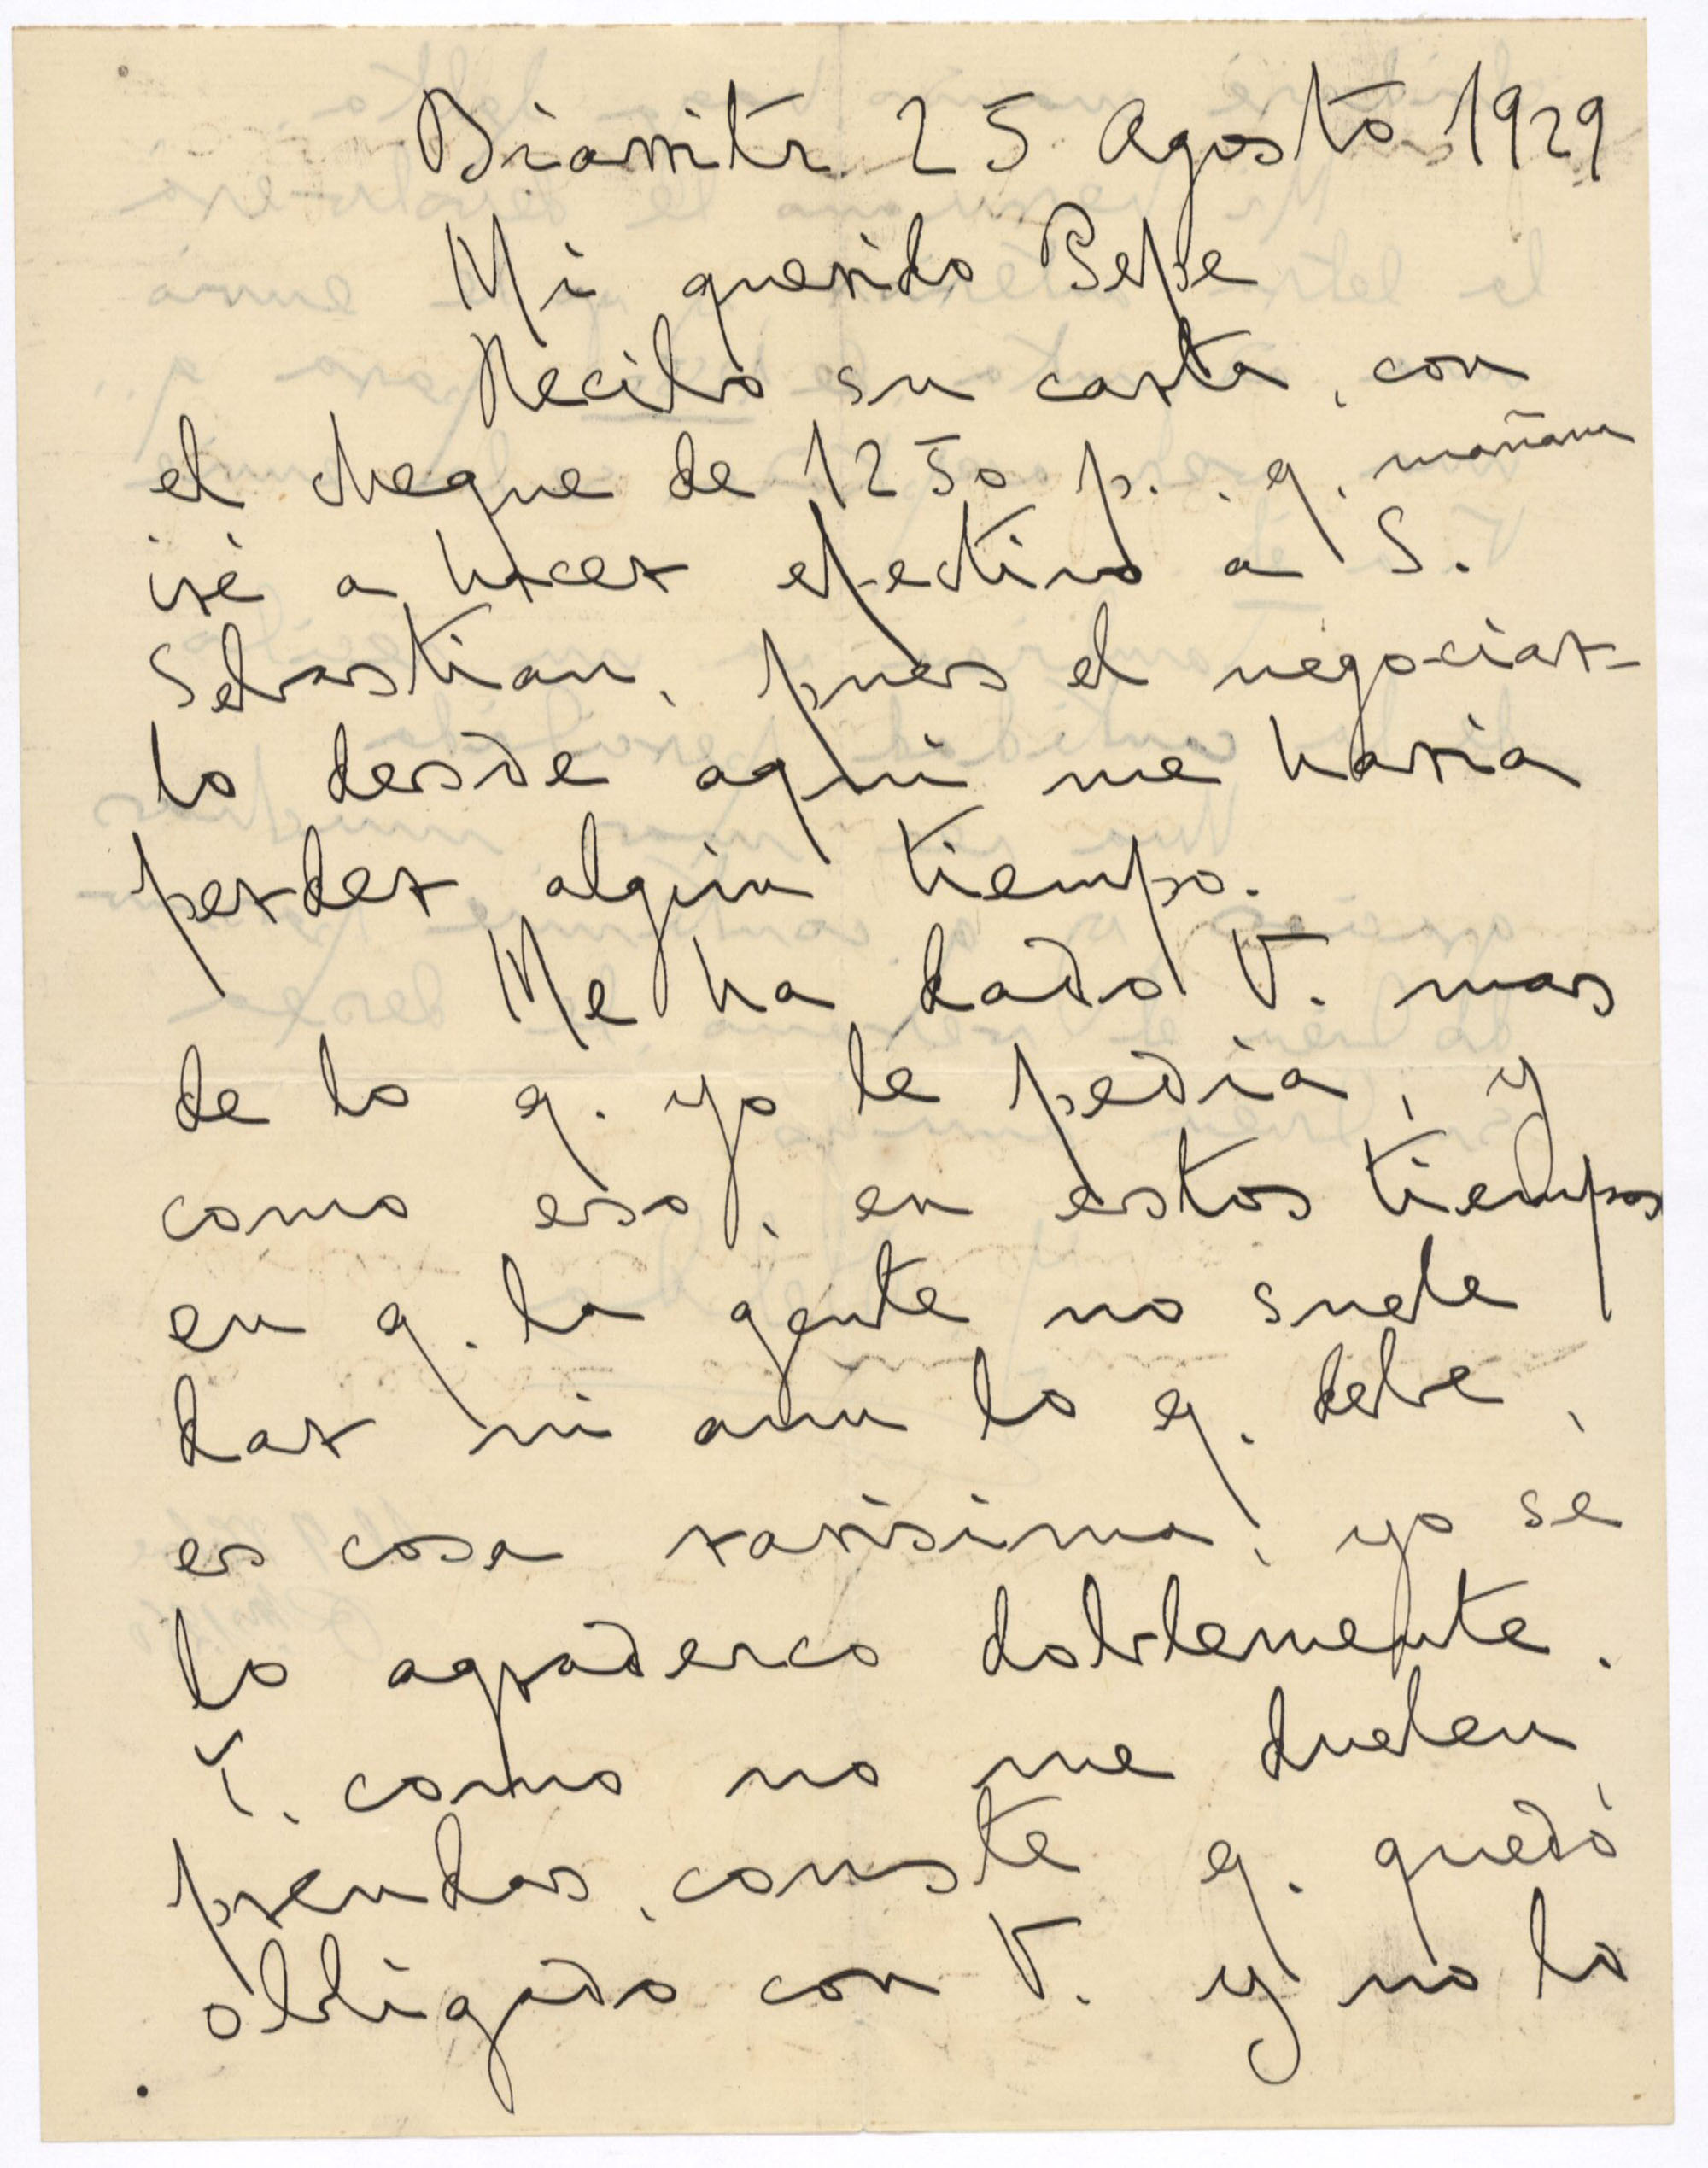 Carta de Joaquín Belda a José Ruiz-Castillo agradeciéndole el cheque de 1.250 pesetas recibidas.